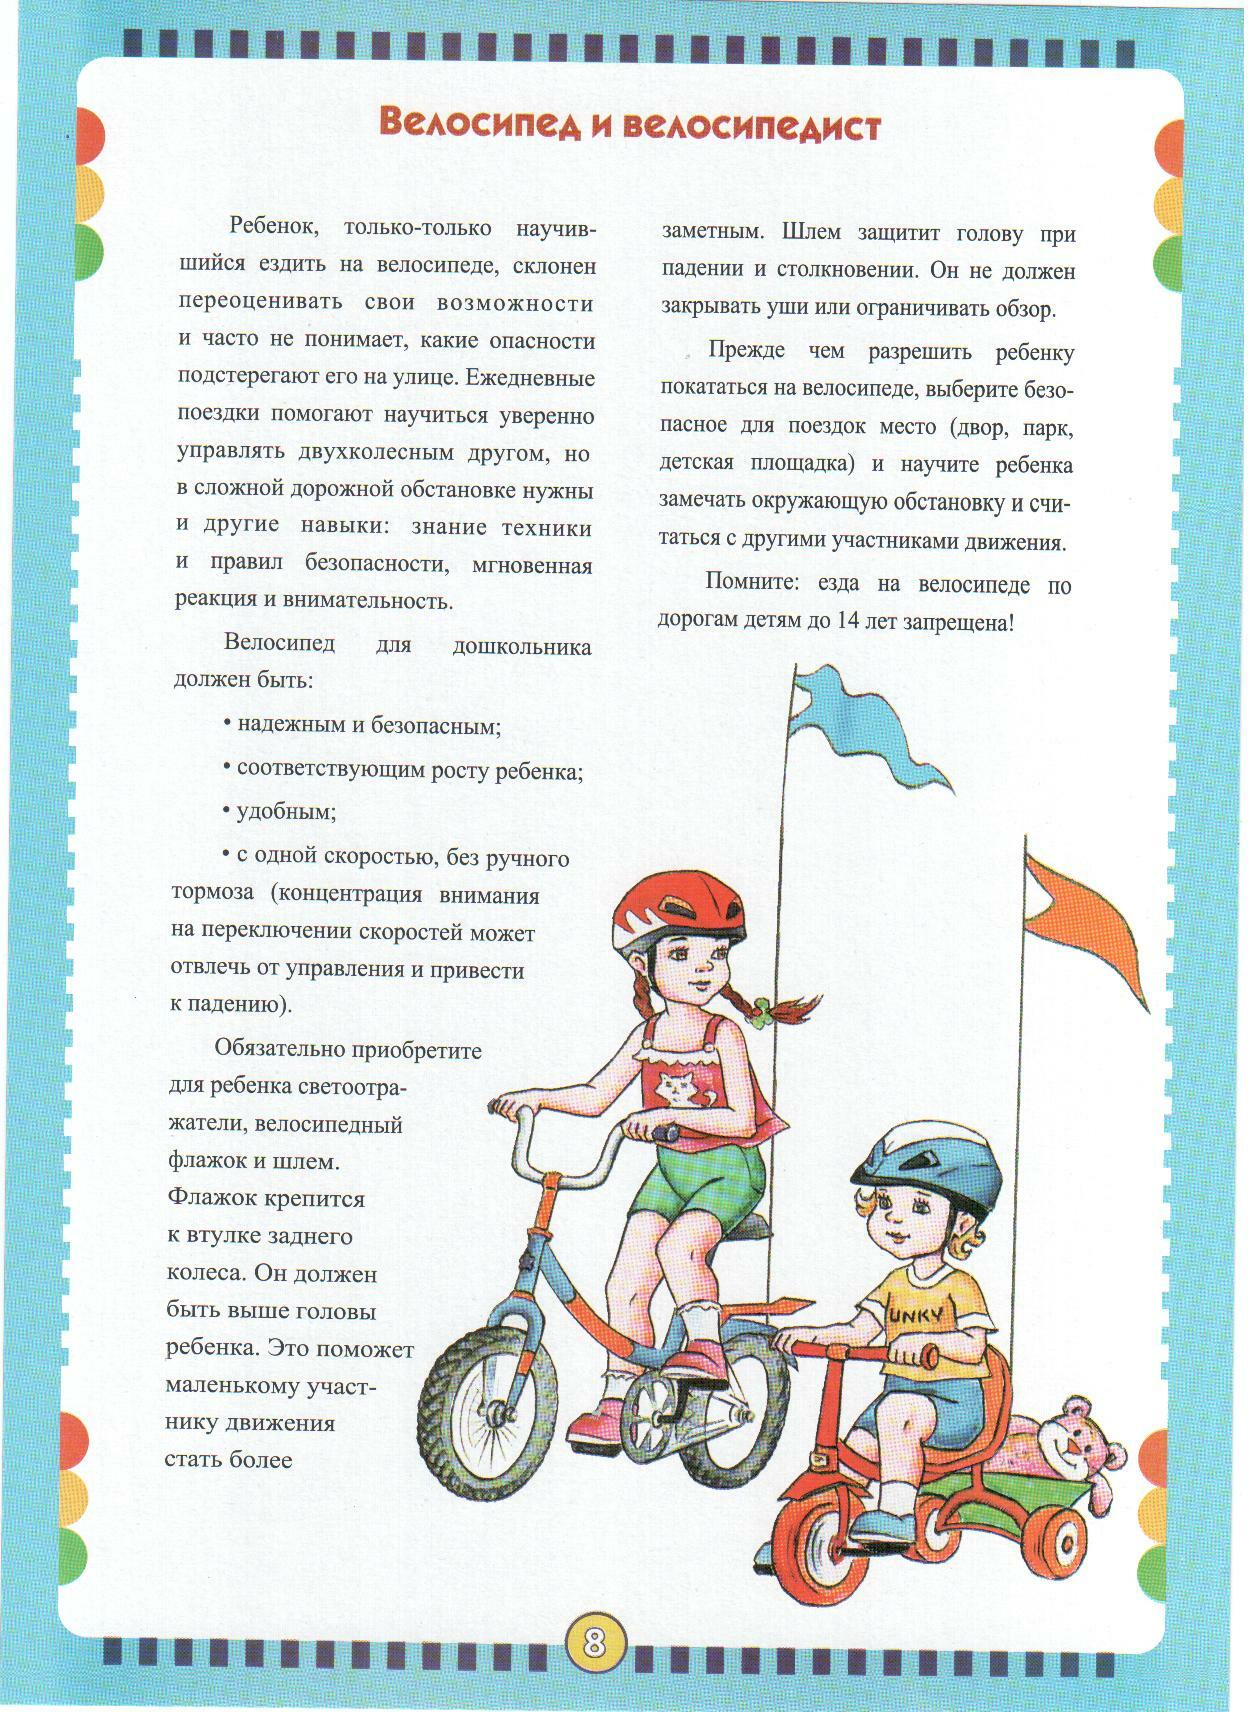 Езда правила игра. Памятка для родителей по ПДД велосипед для детей. Консультация для родителей безопасный велосипед. Консультация для родителей в детском саду правила езды на велосипеде. Консультация для родителей самокат и велосипеды.